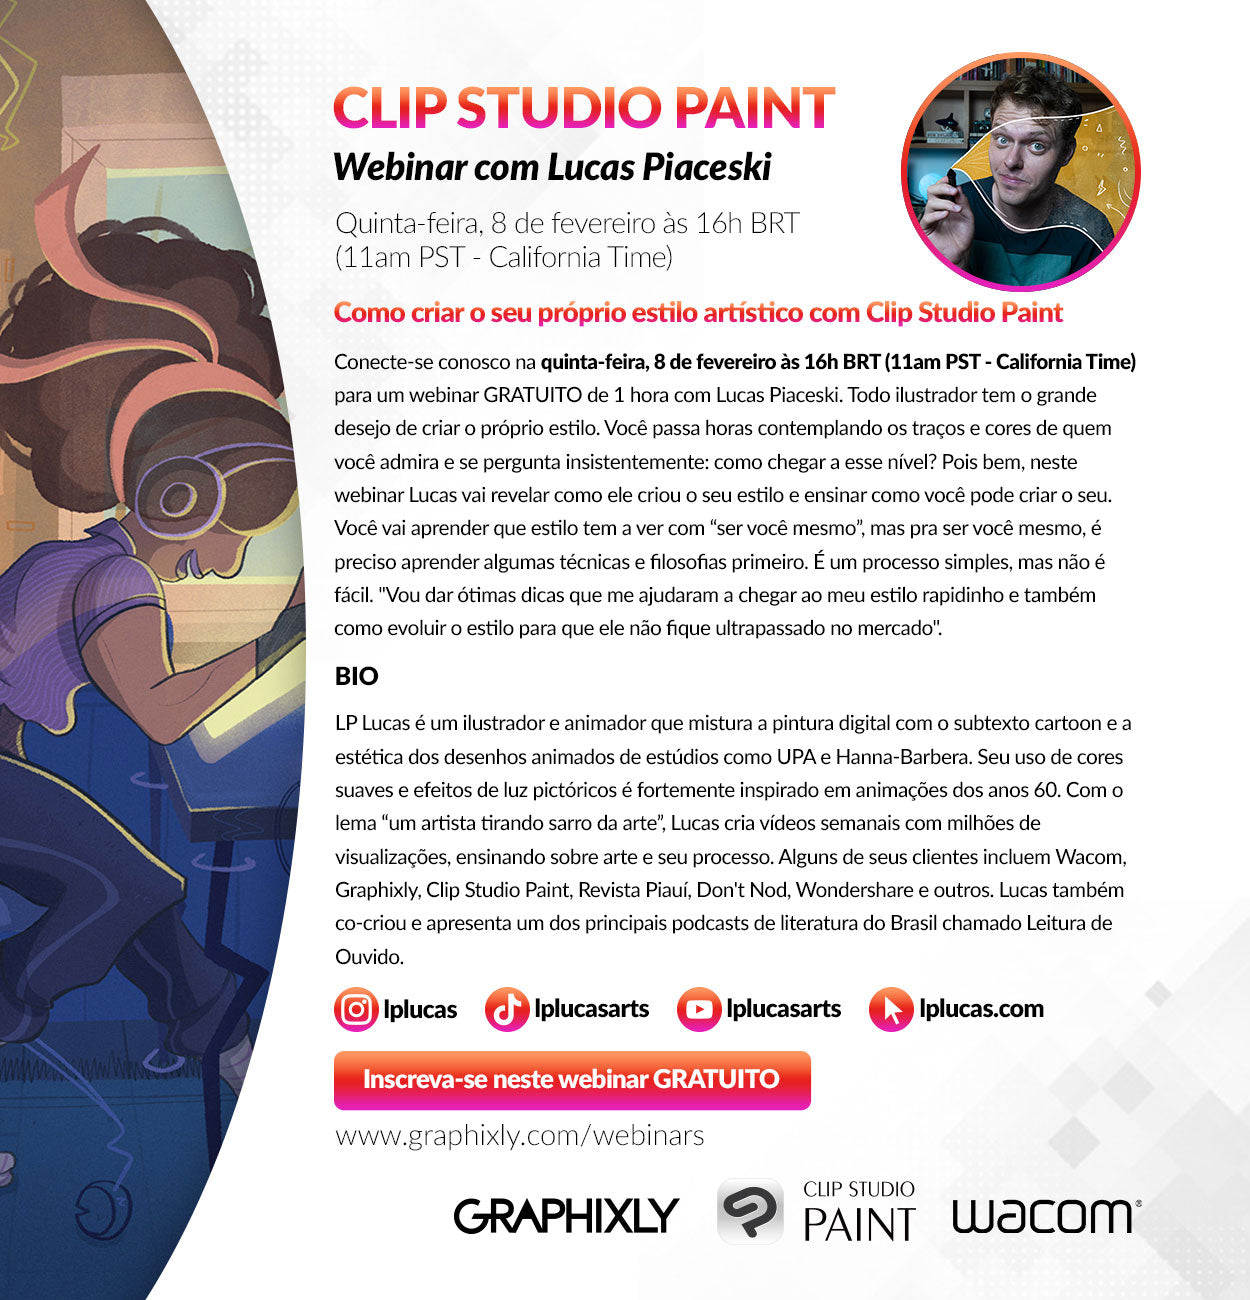 Webinar (Portuguese) - Como criar o seu próprio estilo artístico com Clip Studio Paint com Lucas Piaceski